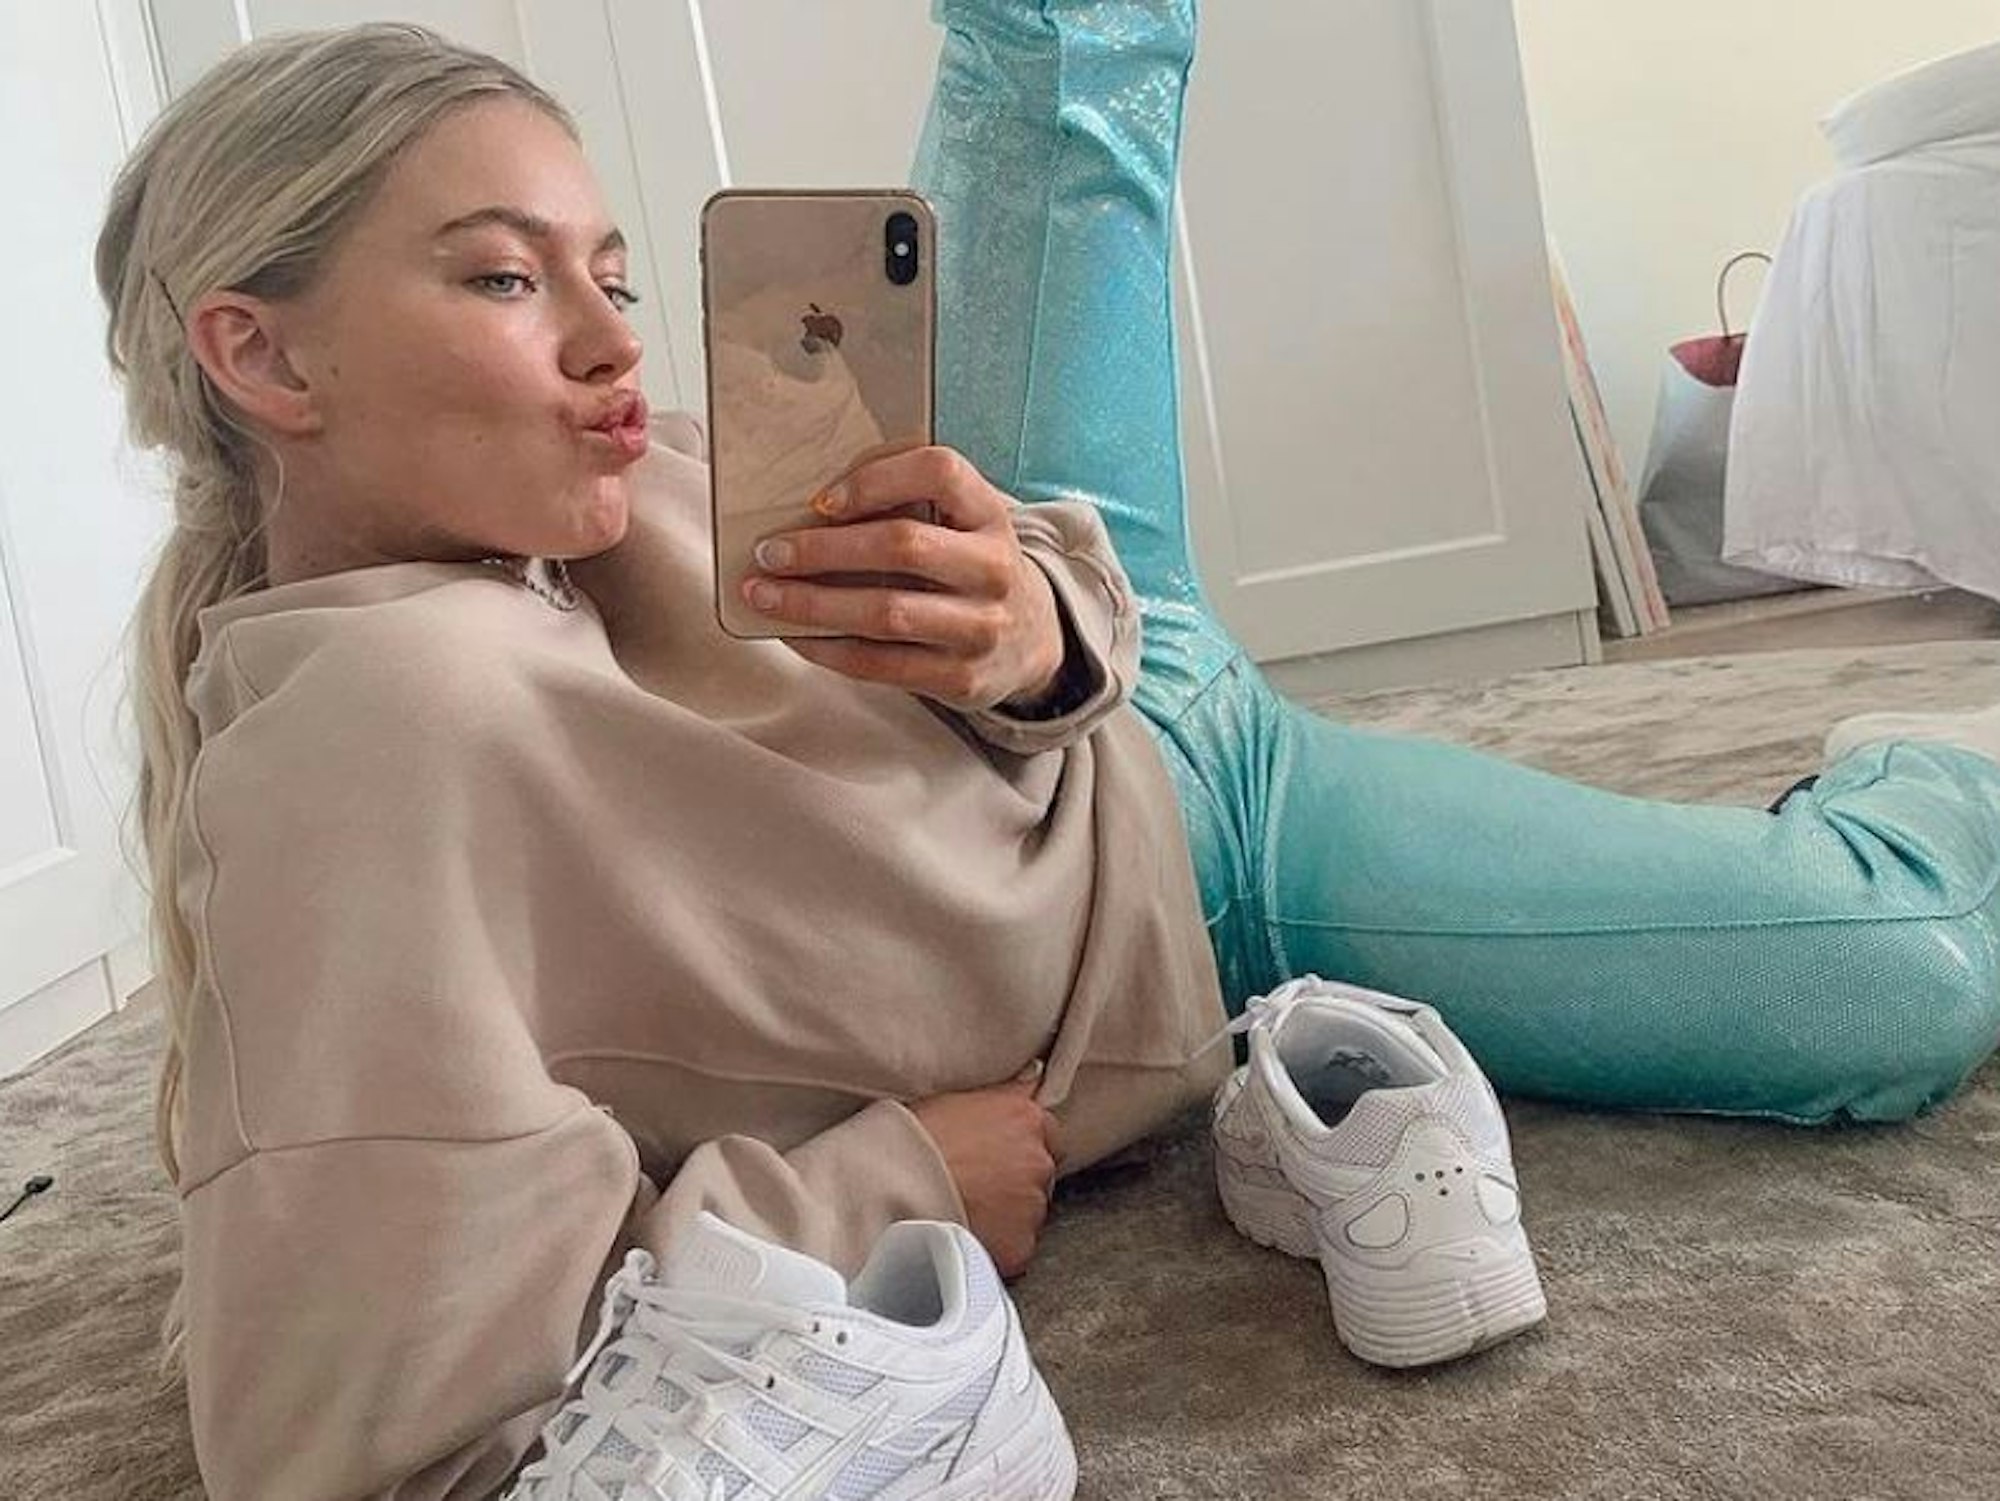 Astrid Smeplass ist die neue Hauptdarstellerin der Neuauflage des Filmes „Drei Haselnüsse für Aschenbrödel“ und zeigt sich sexy auf Instagram. Das Selfie wurde im Mai 2020 von Astrid Smeplass aufgenommen und bei Instagram gepostet.